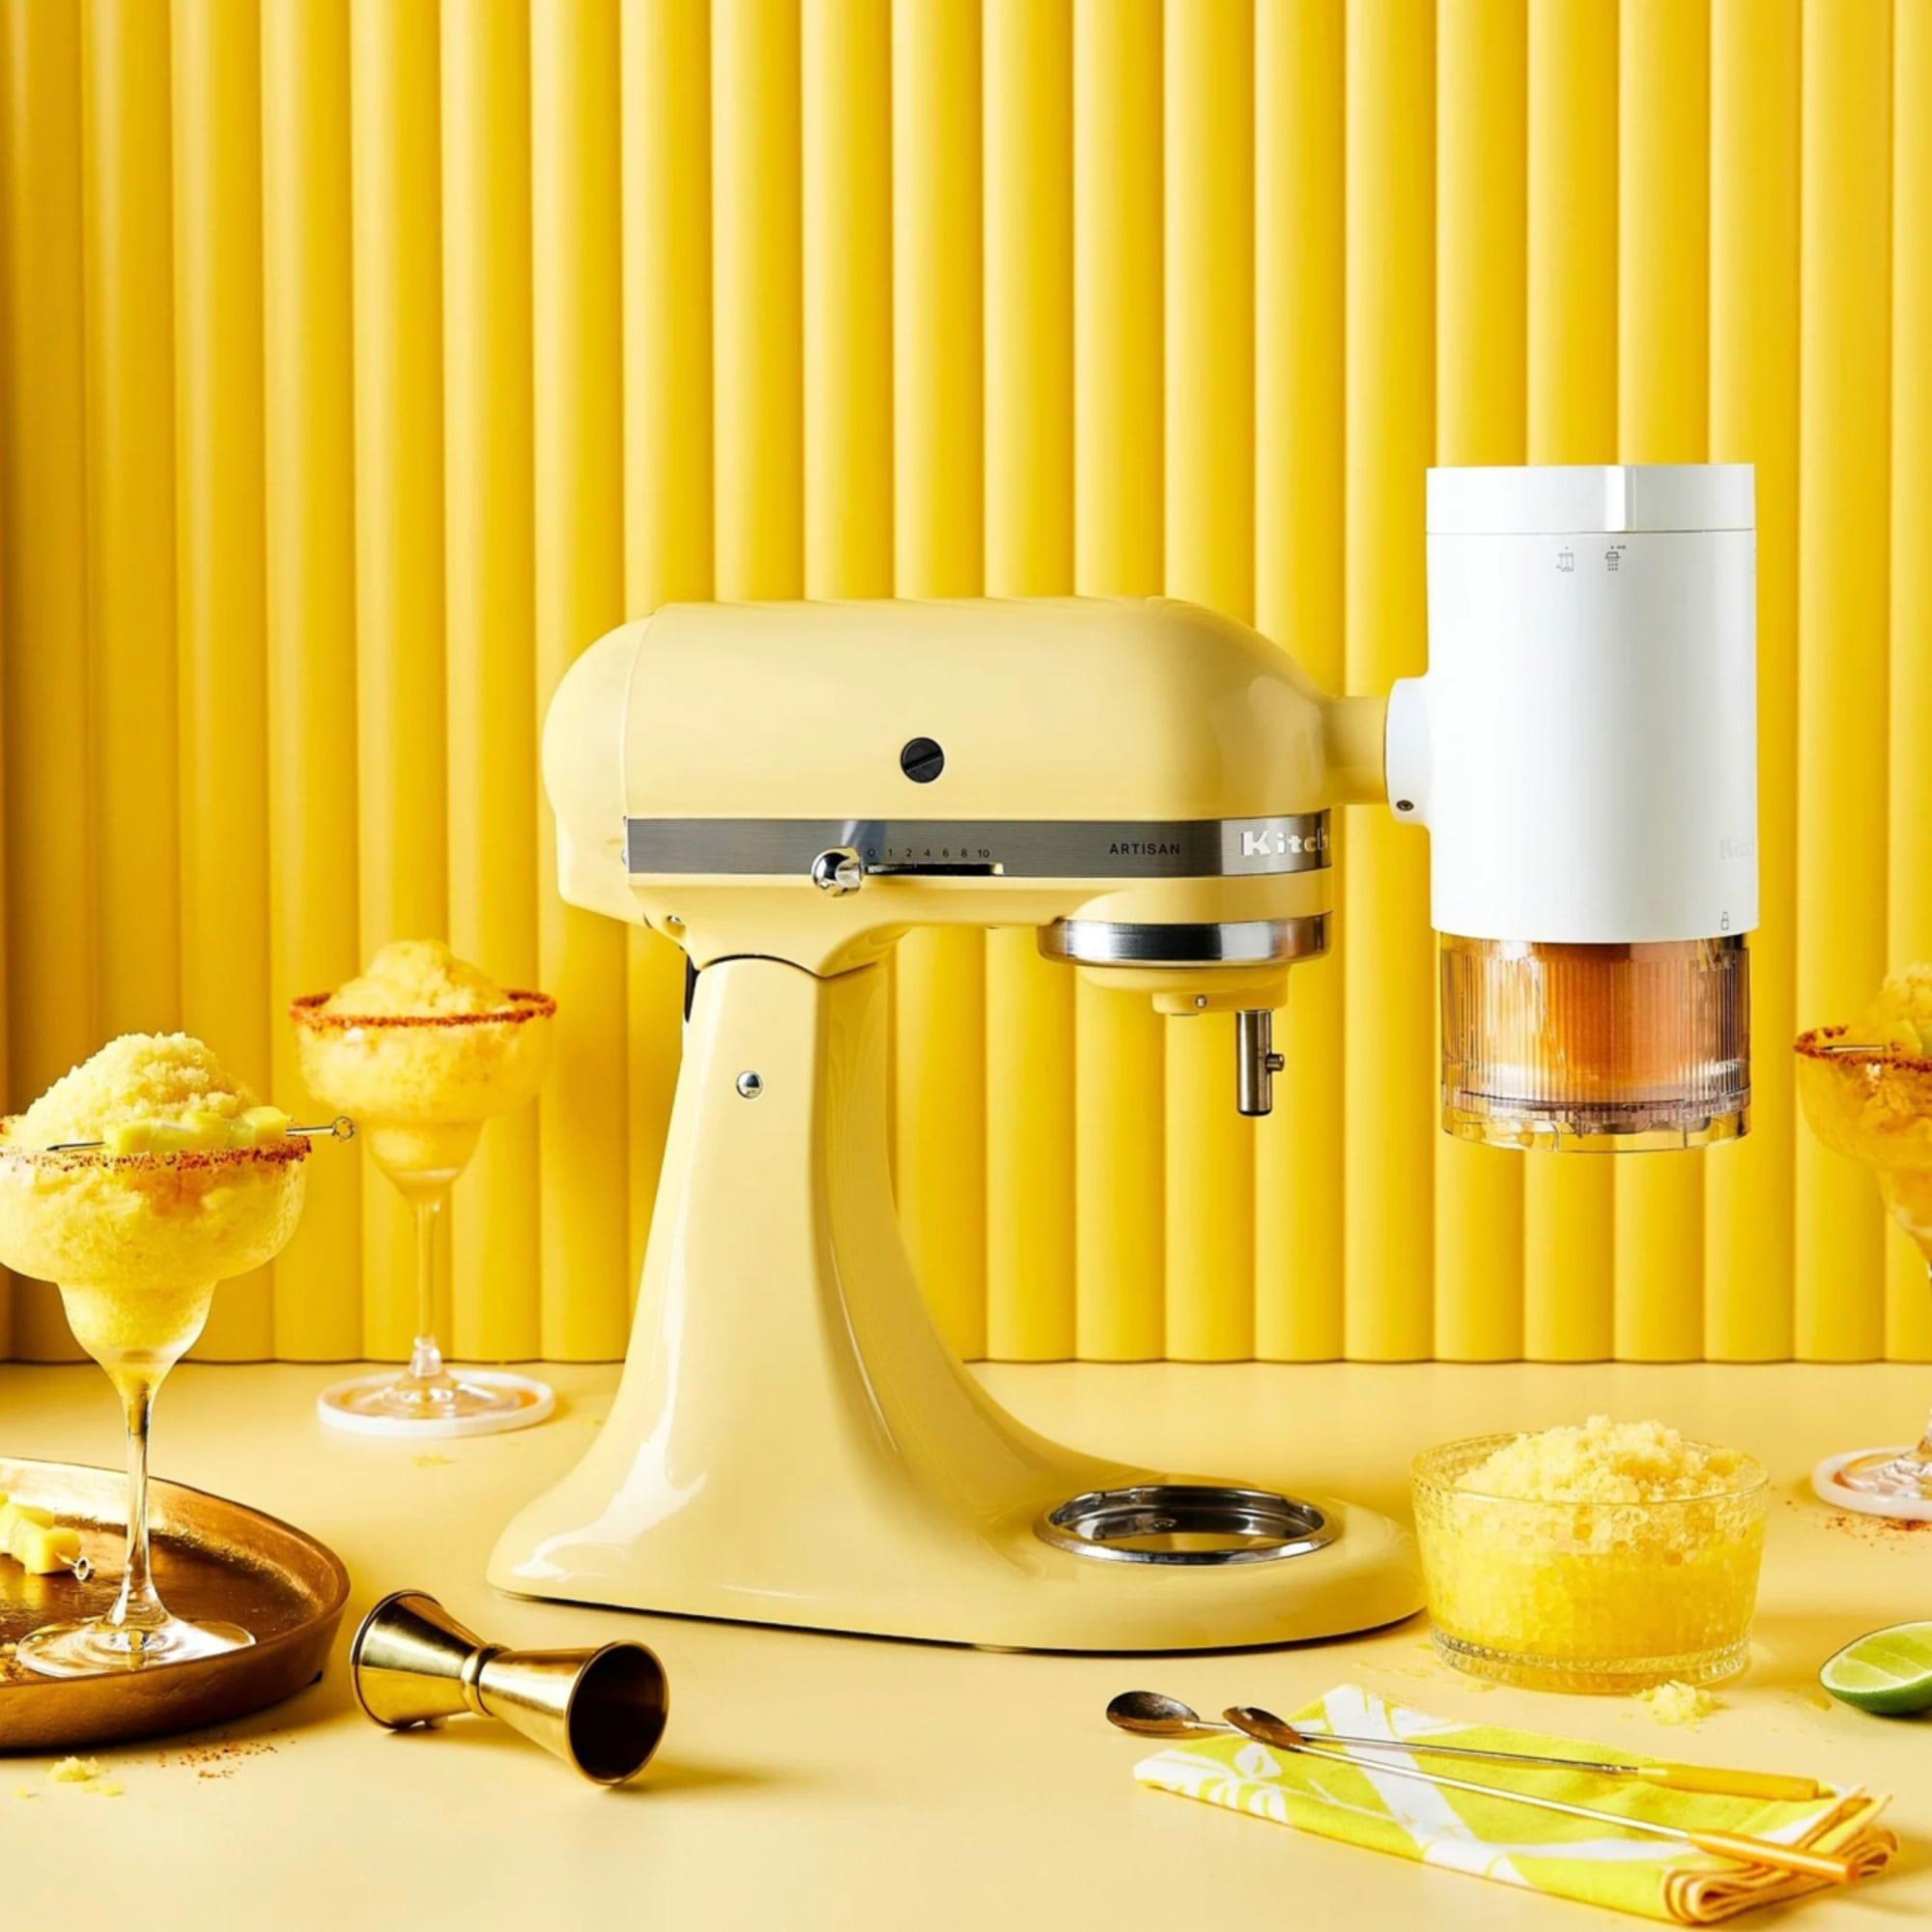 KitchenAid Artisan KSM195 Stand Mixer Majestic Yellow Image 3